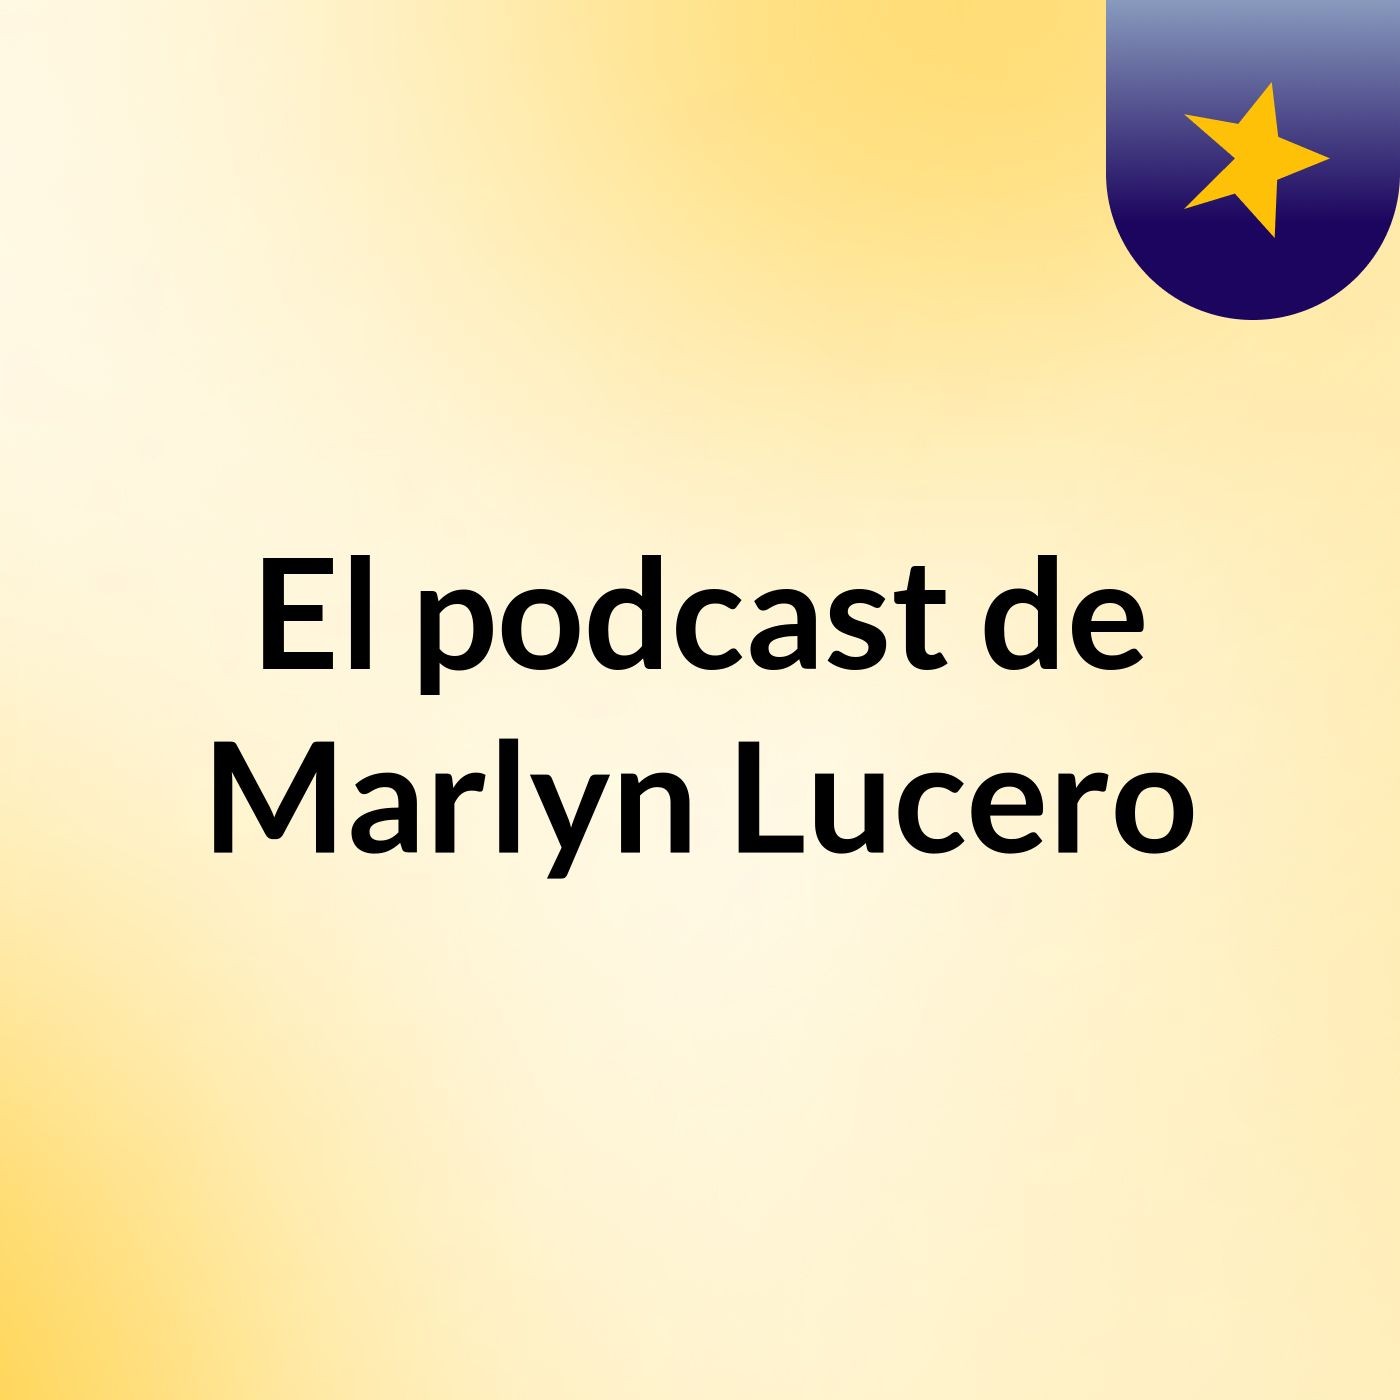 El podcast de Marlyn Lucero